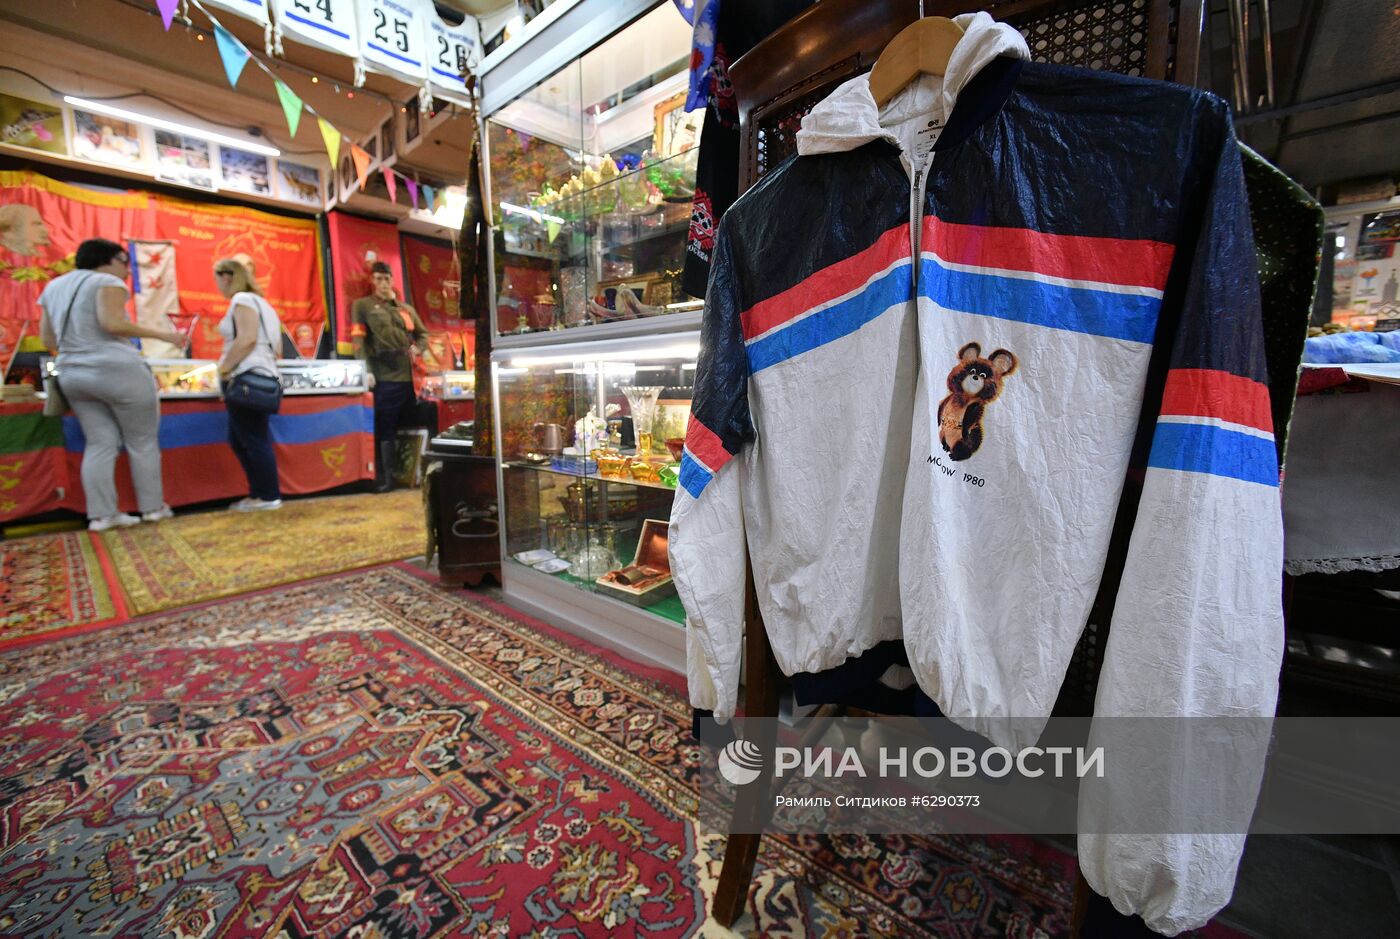 Выставка коллекции предметов, связанных с Олимпийскими играми 1980 года в Москве